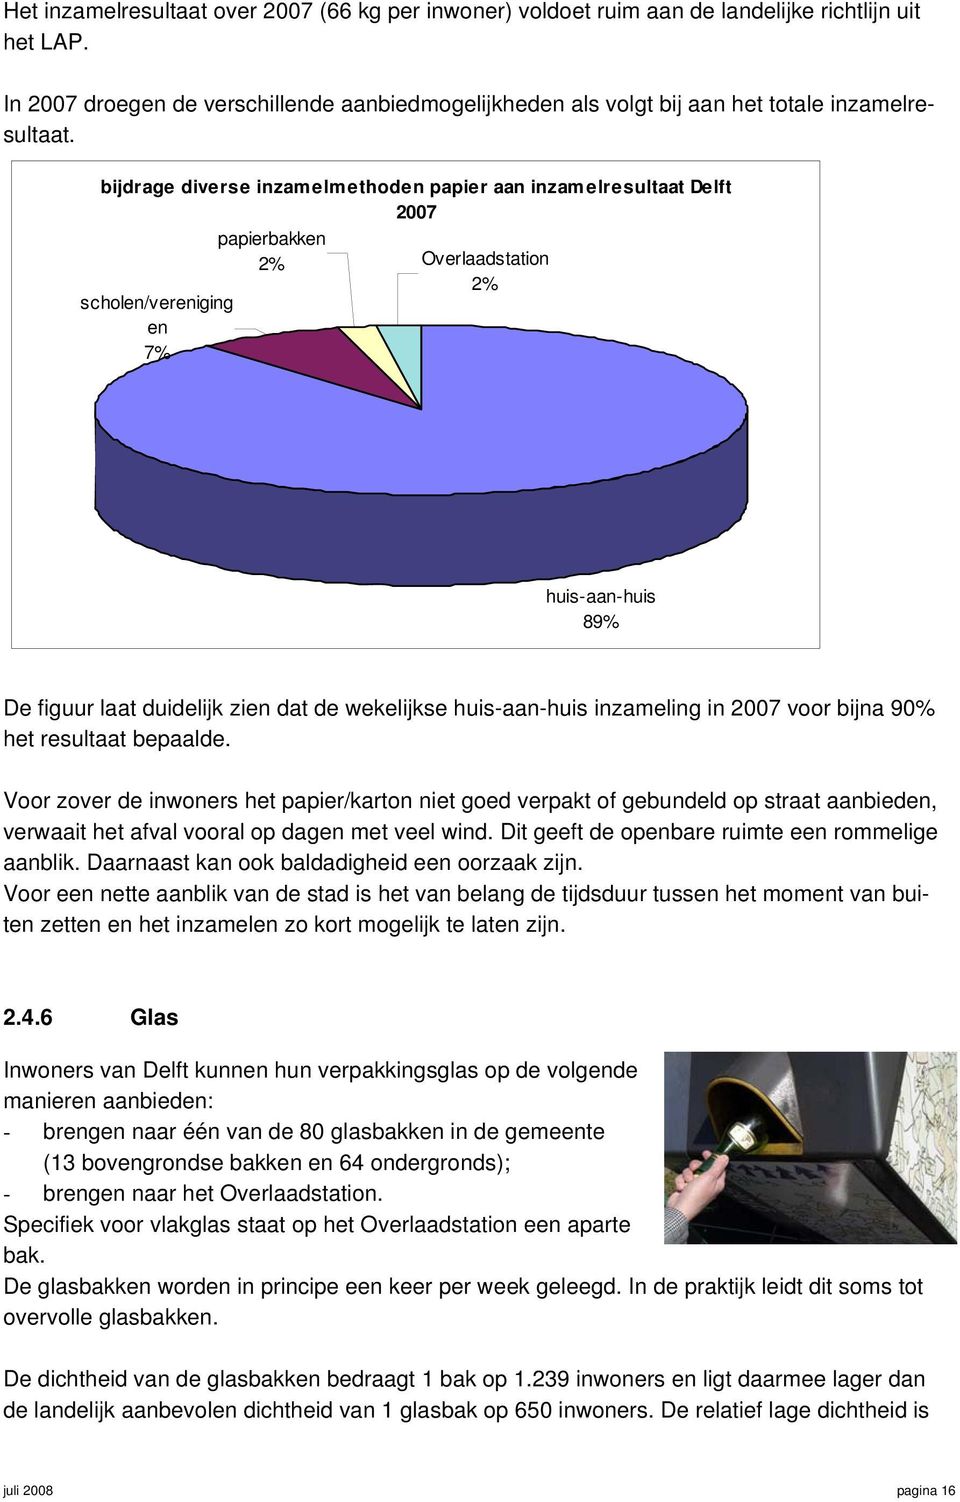 bijdrage diverse inzamelmethoden papier aan inzamelresultaat Delft 2007 papierbakken 2% Overlaadstation scholen/vereniging en 7% 2% huis-aan-huis 89% De figuur laat duidelijk zien dat de wekelijkse